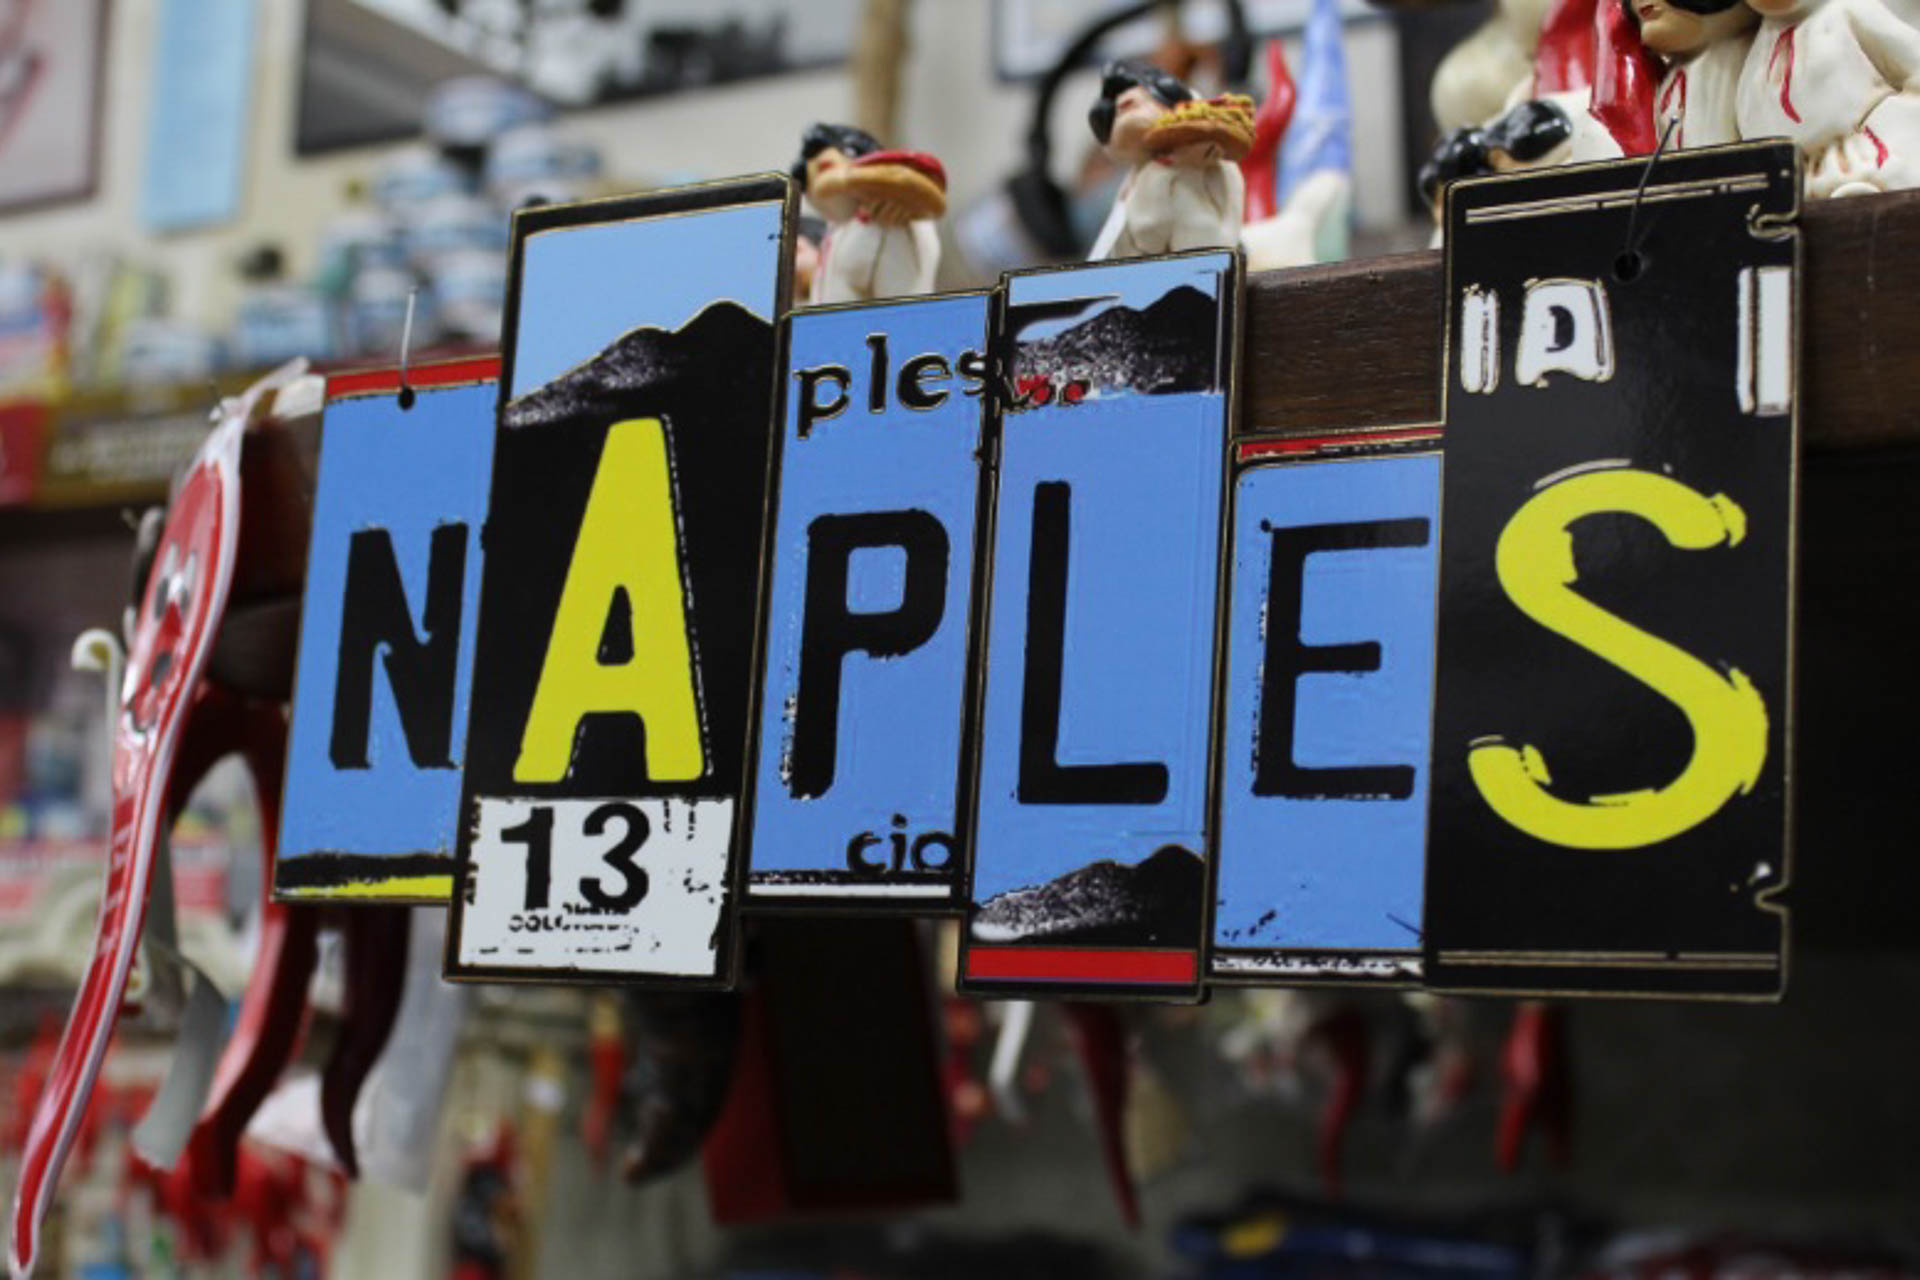 Muitas placas com letras diferentes soletrando Naples